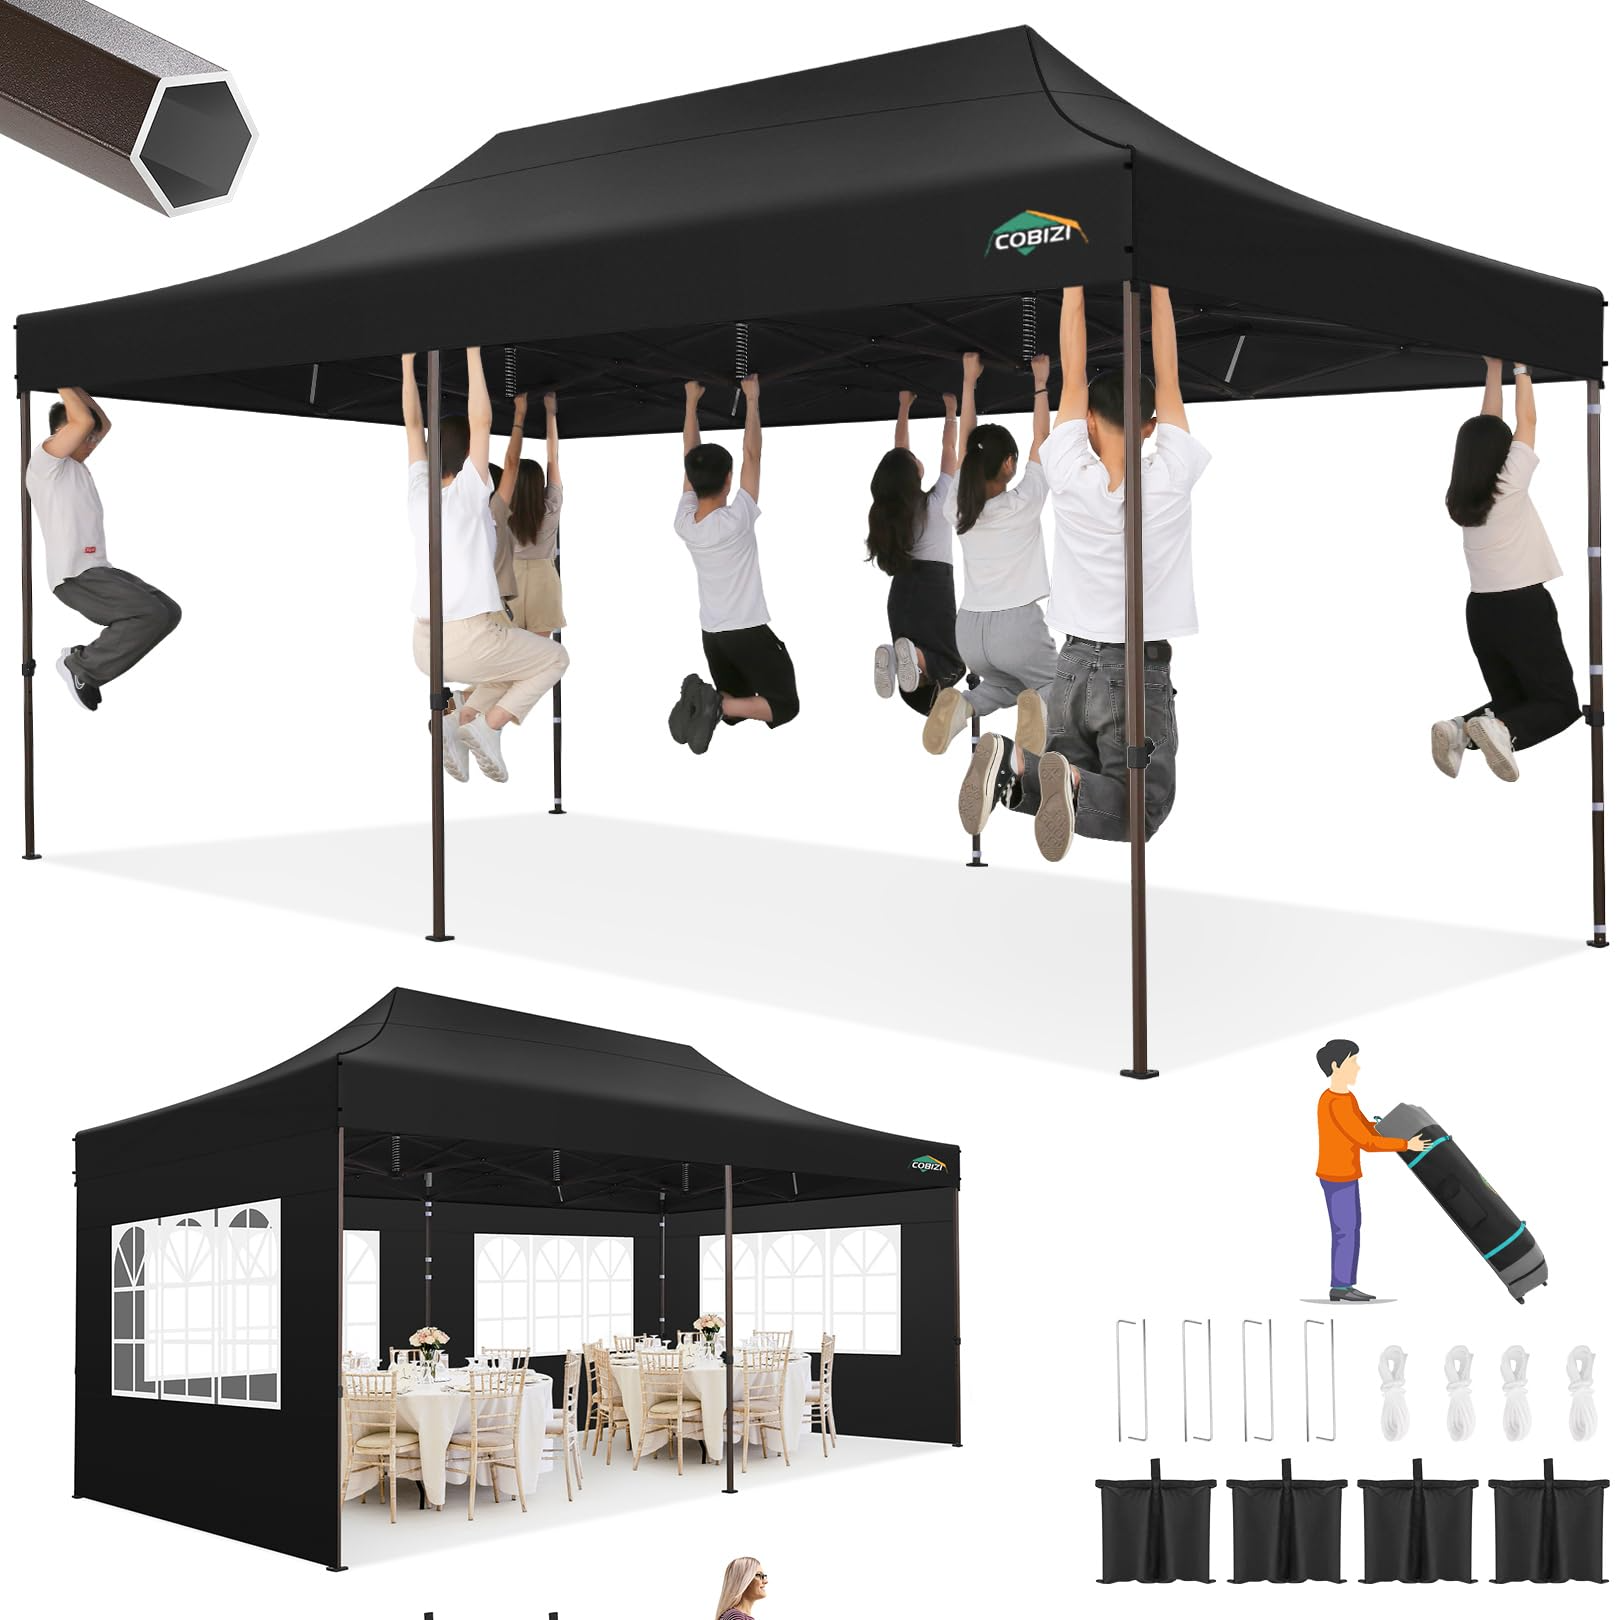 COBIZI Pop Up Canopy Tienda de campaña grande para fiestas Refugio 10